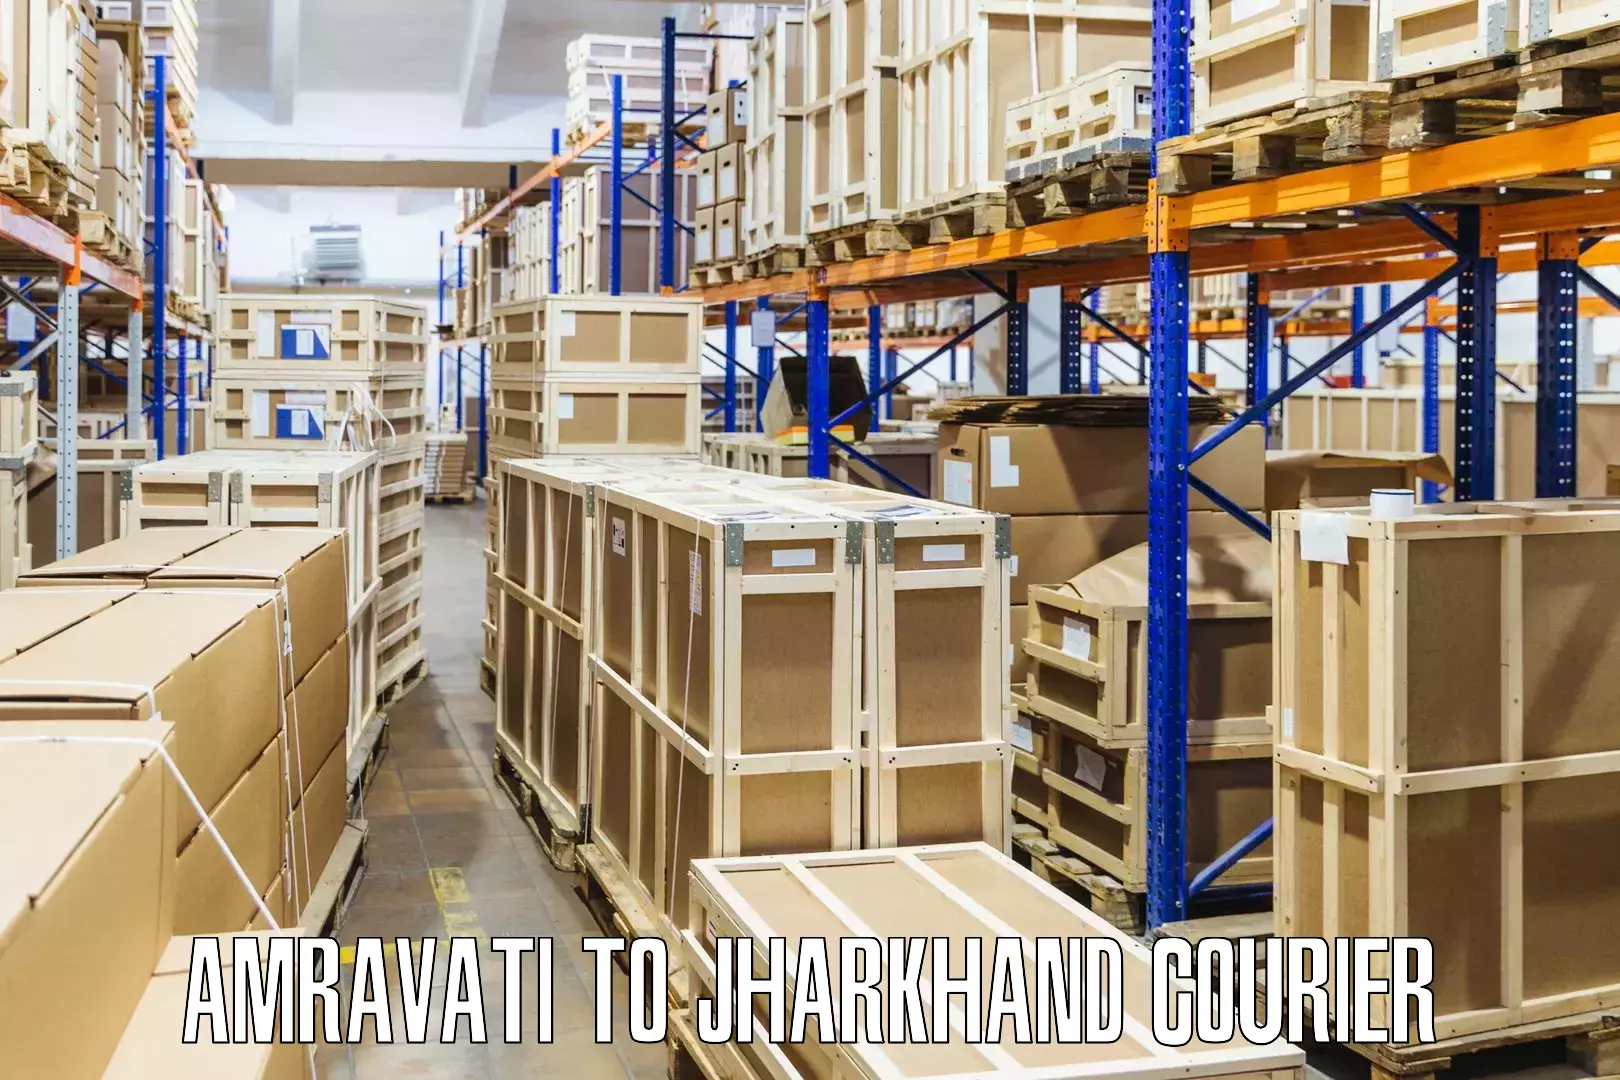 Expedited shipping methods Amravati to Chatra